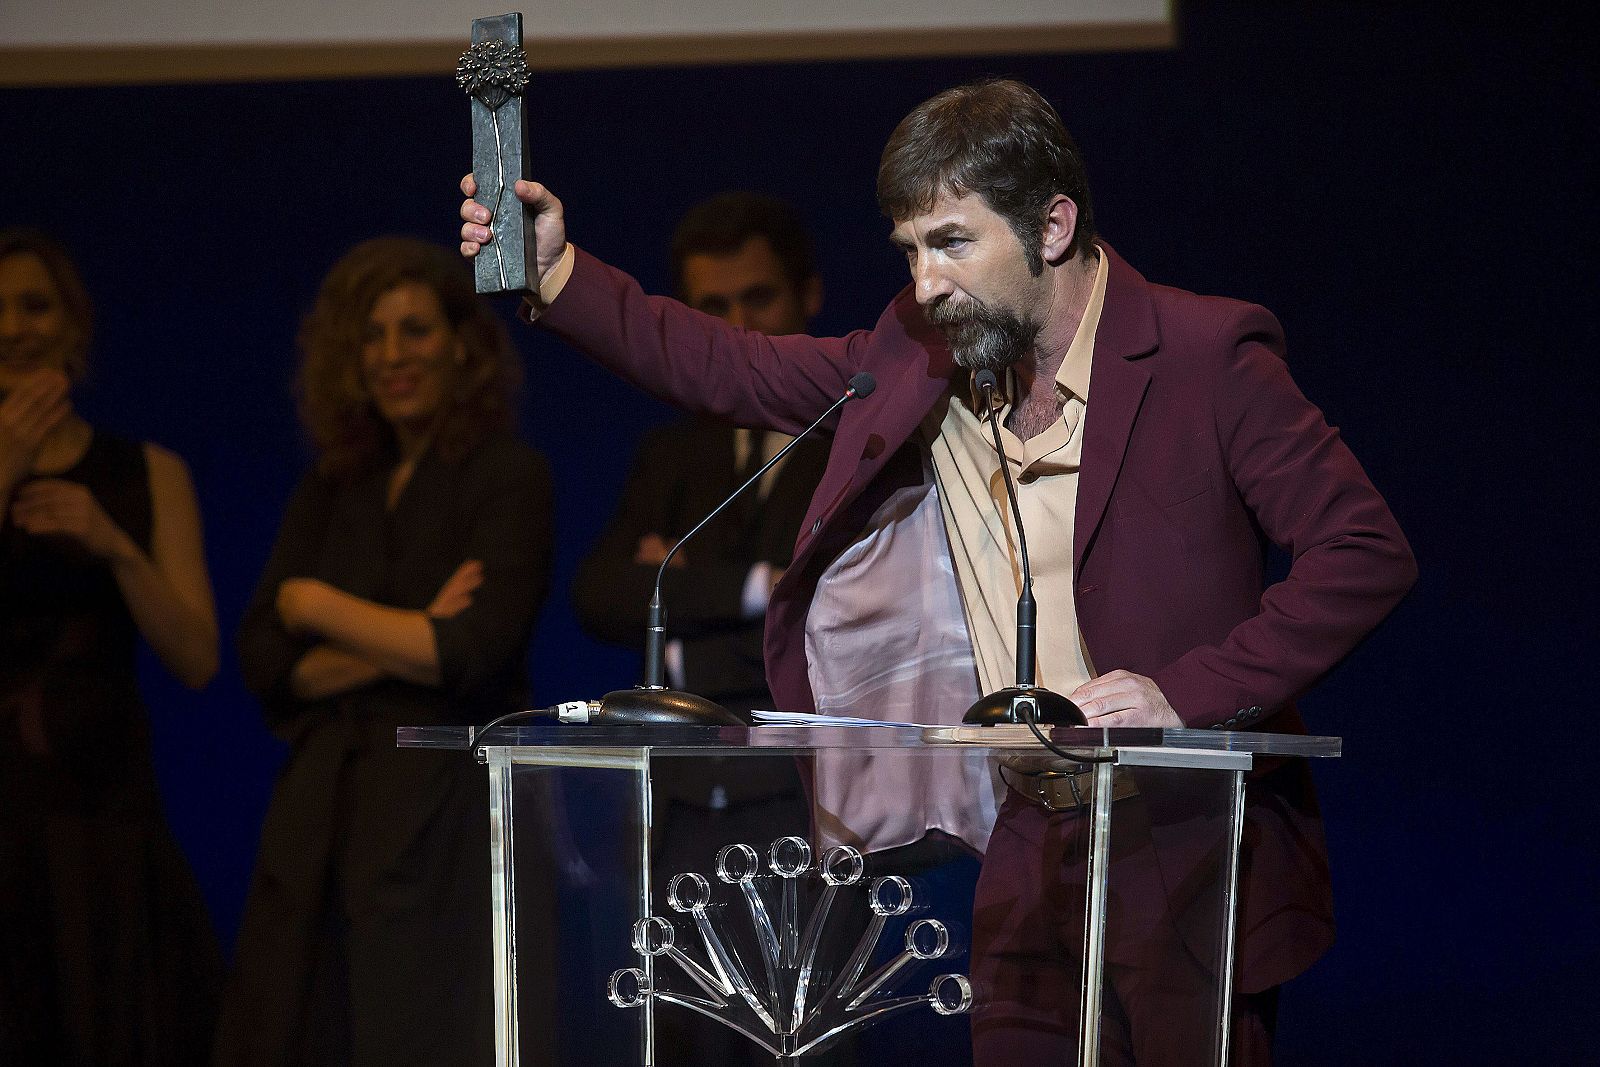 El actor Antonio de la Torre, tras recibir el Premio Málaga durante el acto del Festival de Cine Español celebrado en la capital andaluza.